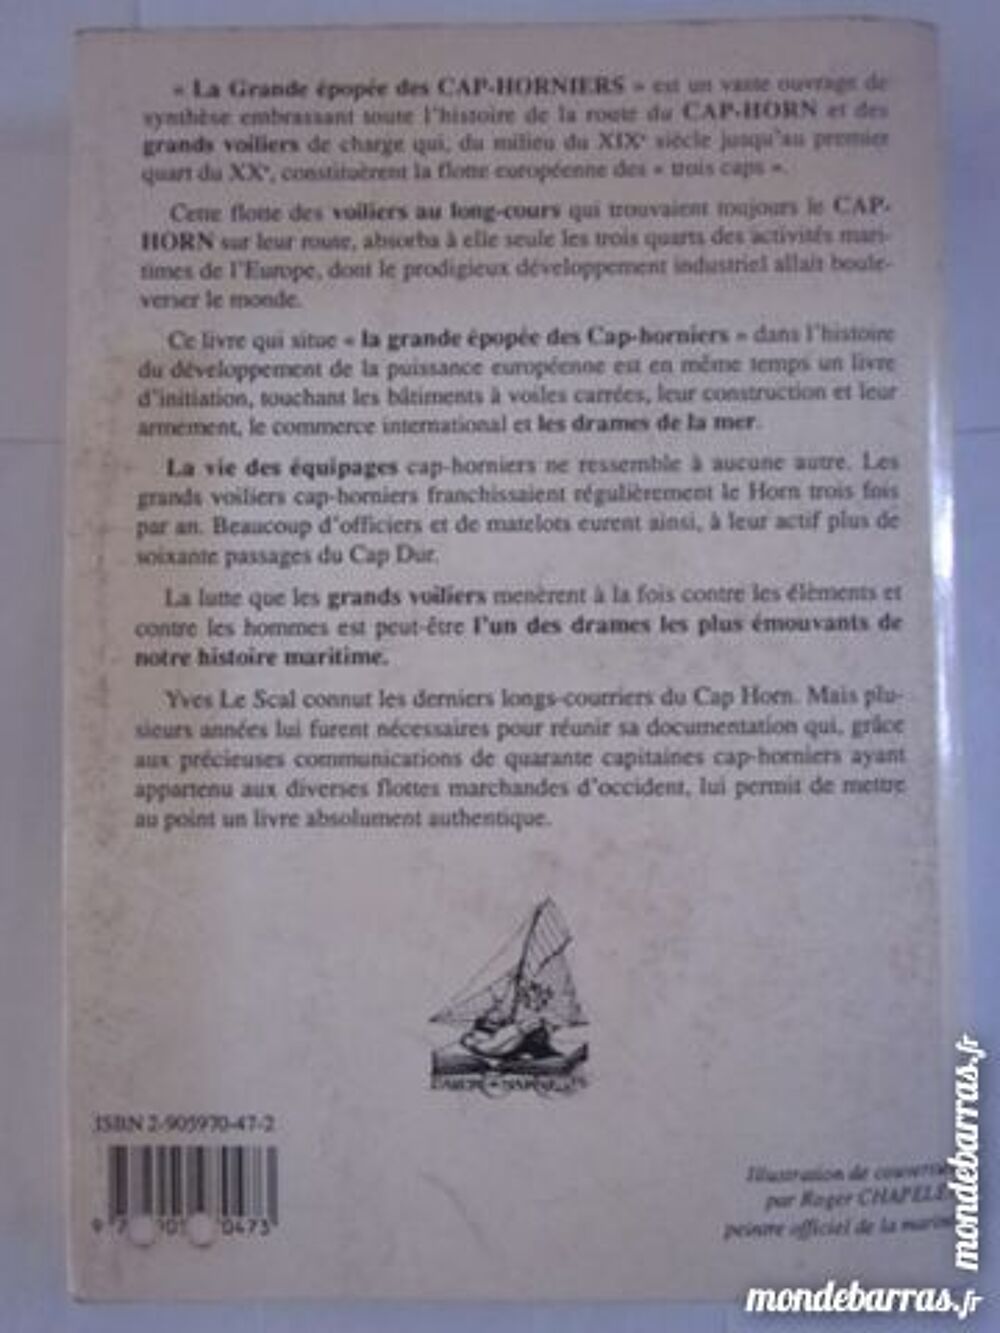 LA GRANDE EPOPEE DES CAP HORNIERS par Y. LE SCAL Livres et BD